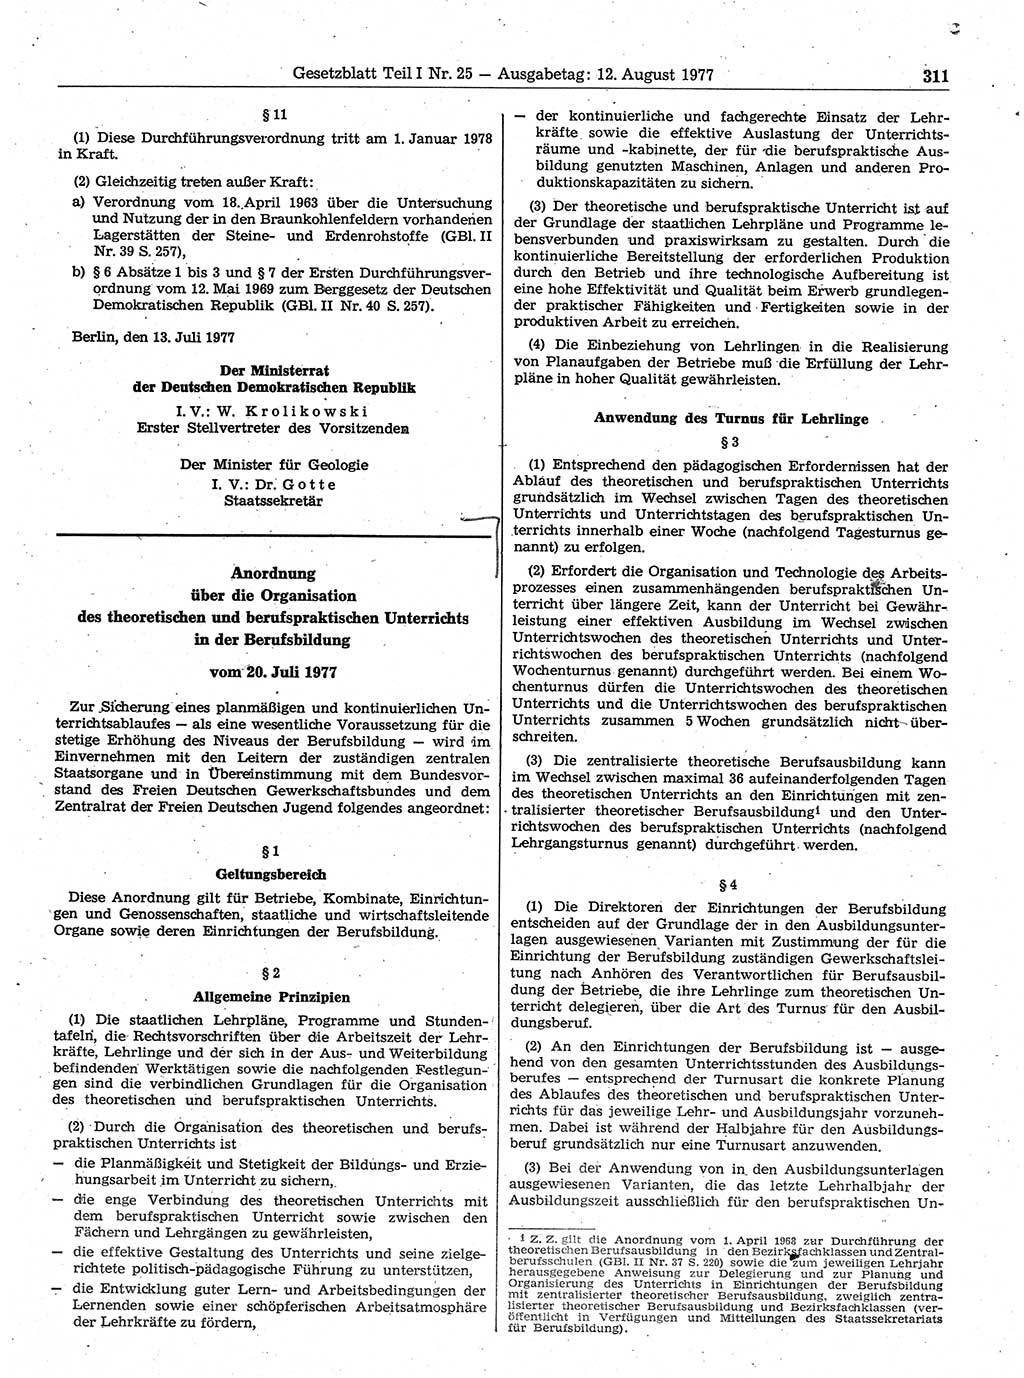 Gesetzblatt (GBl.) der Deutschen Demokratischen Republik (DDR) Teil Ⅰ 1977, Seite 311 (GBl. DDR Ⅰ 1977, S. 311)